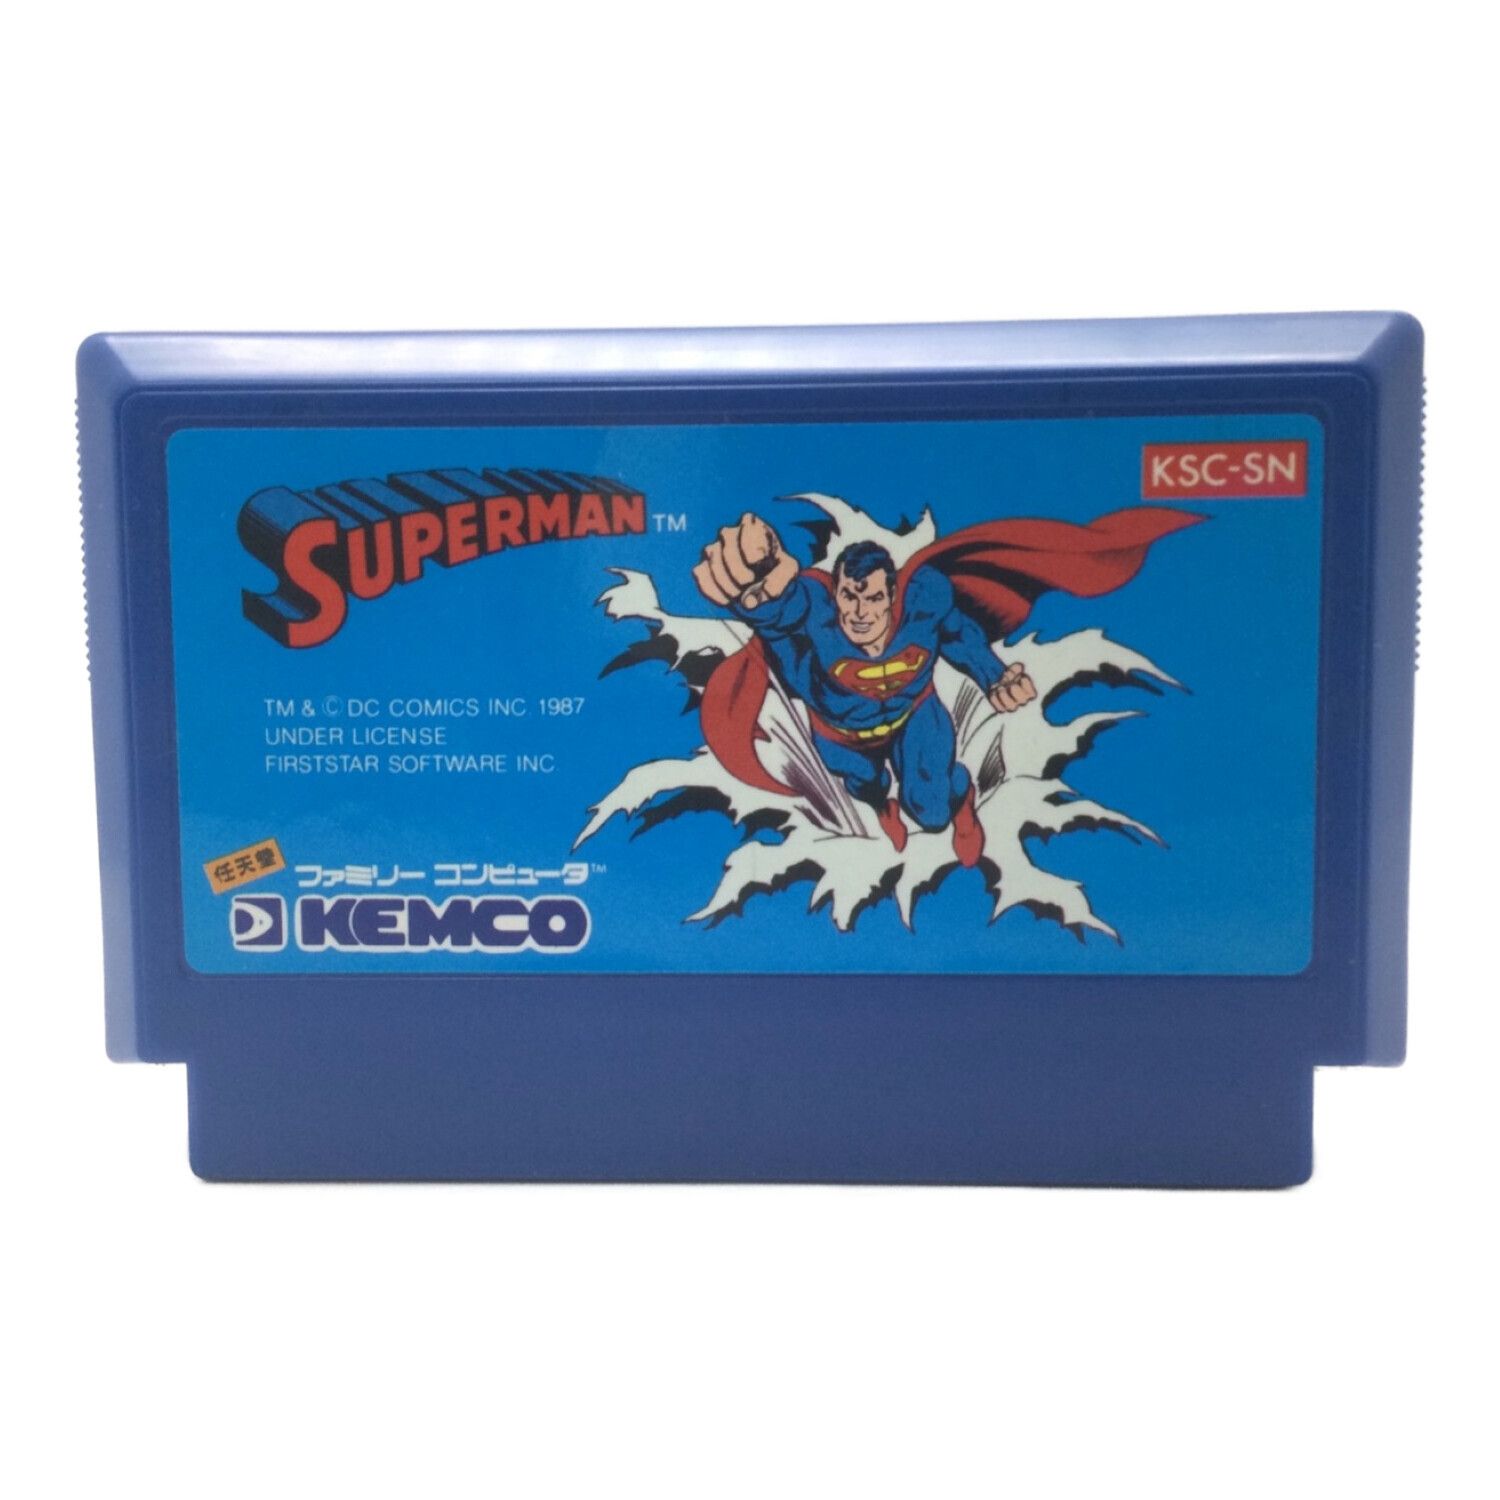 Nintendo (ニンテンドウ) スーパーマン ファミコン用ソフト 